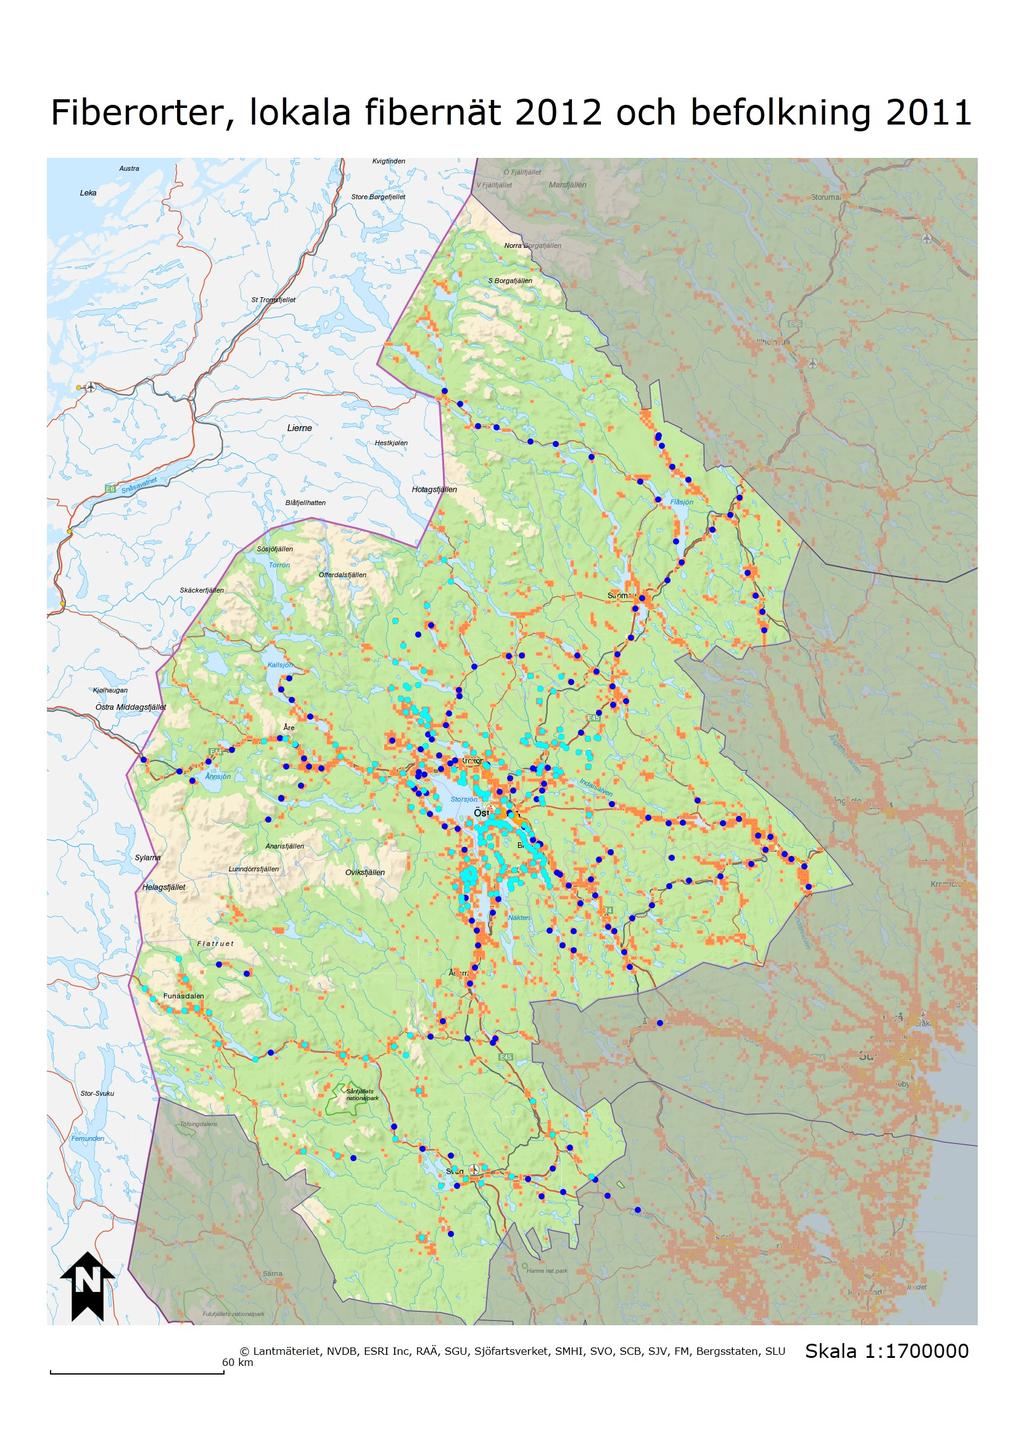 BREDBANDSSTRATEGI FÖR JÄMTLANDS LÄN MOT ÅR 2020 Karta 2 Orter med fiber i Jämtlands län 2011. Källa: Länsstyrelsens kartläggning.